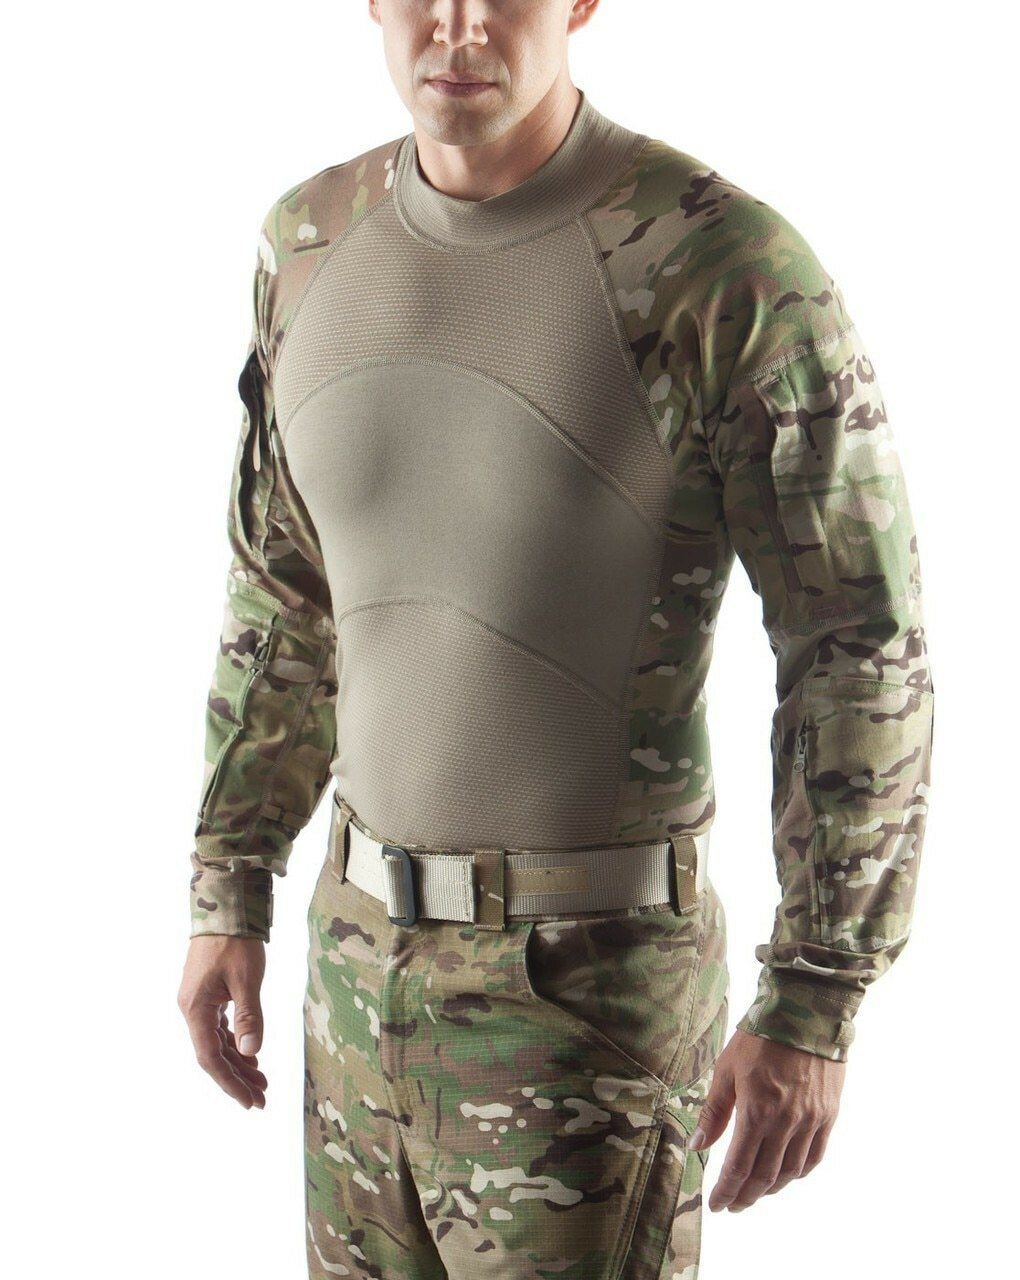 Apparel - Tops - Combat - USGI Massif ACS Army Combat Shirt FR - Multicam